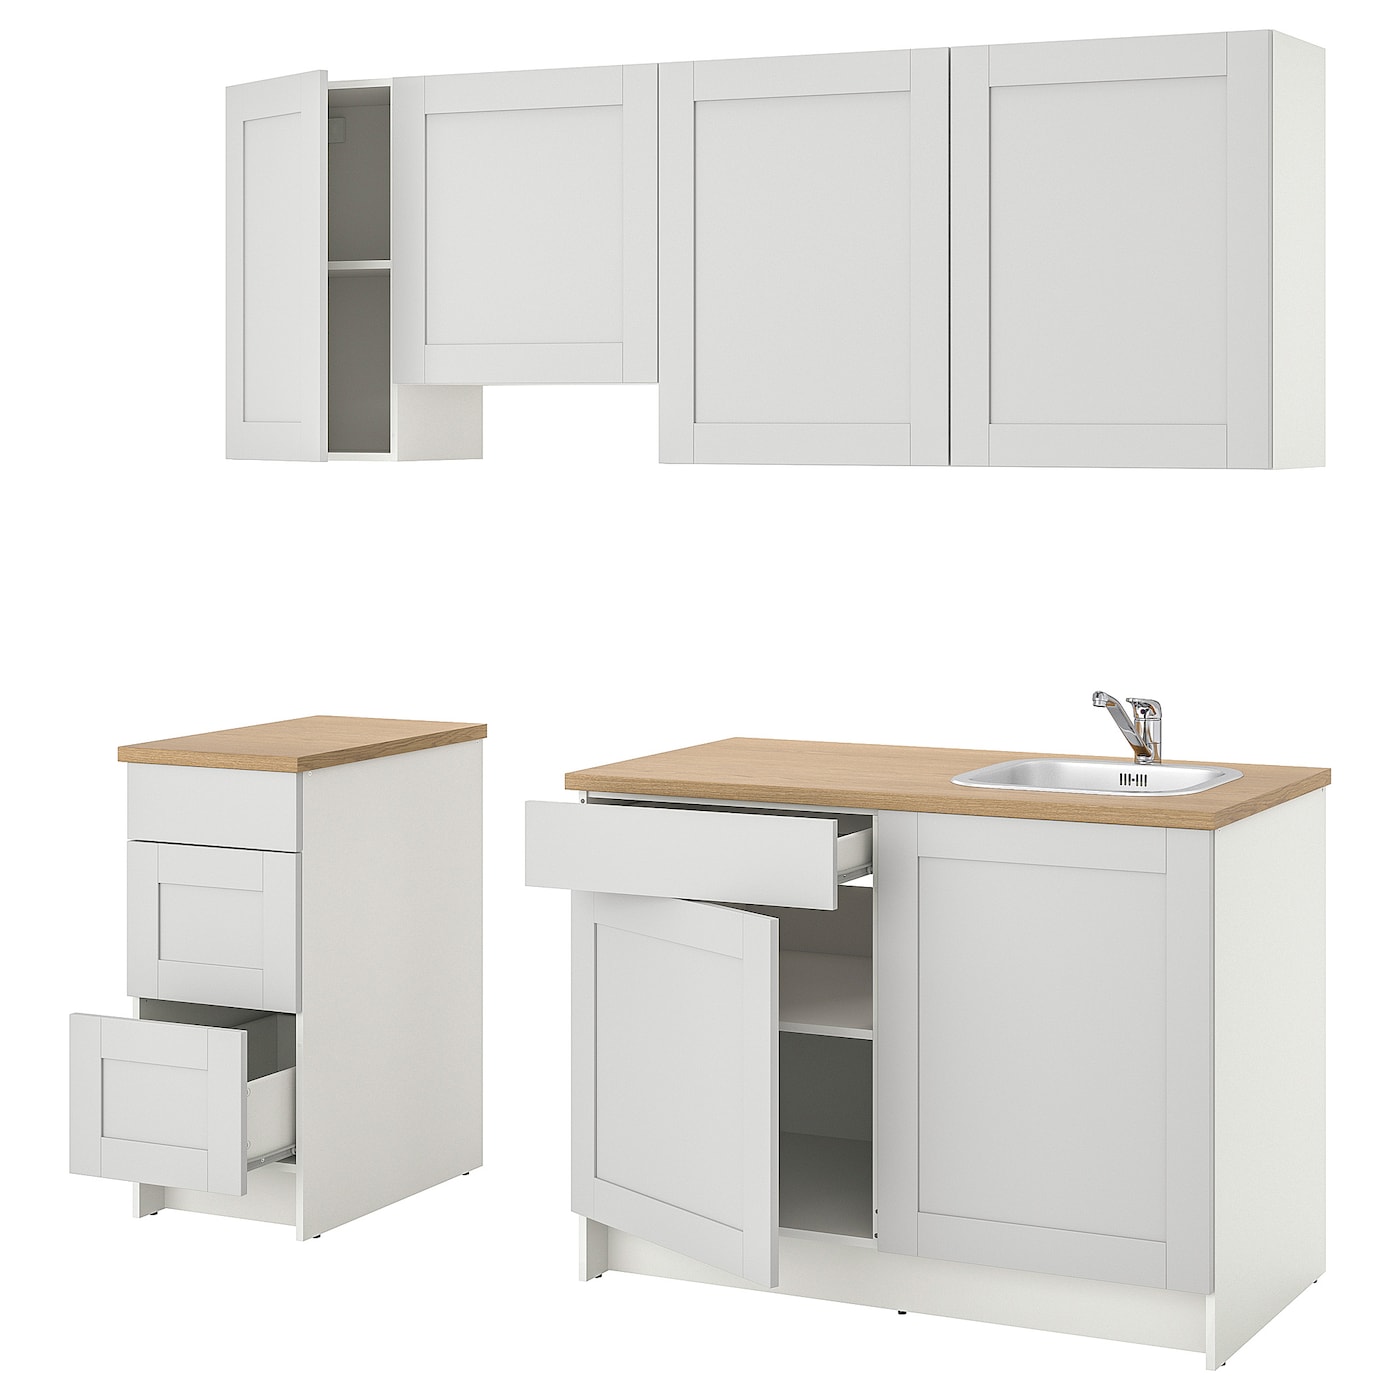 Кухонная комбинация для хранения -   KNOXHULT IKEA/ КНОКСХУЛЬТ ИКЕА, 220x61x220 см, бежевый/белый